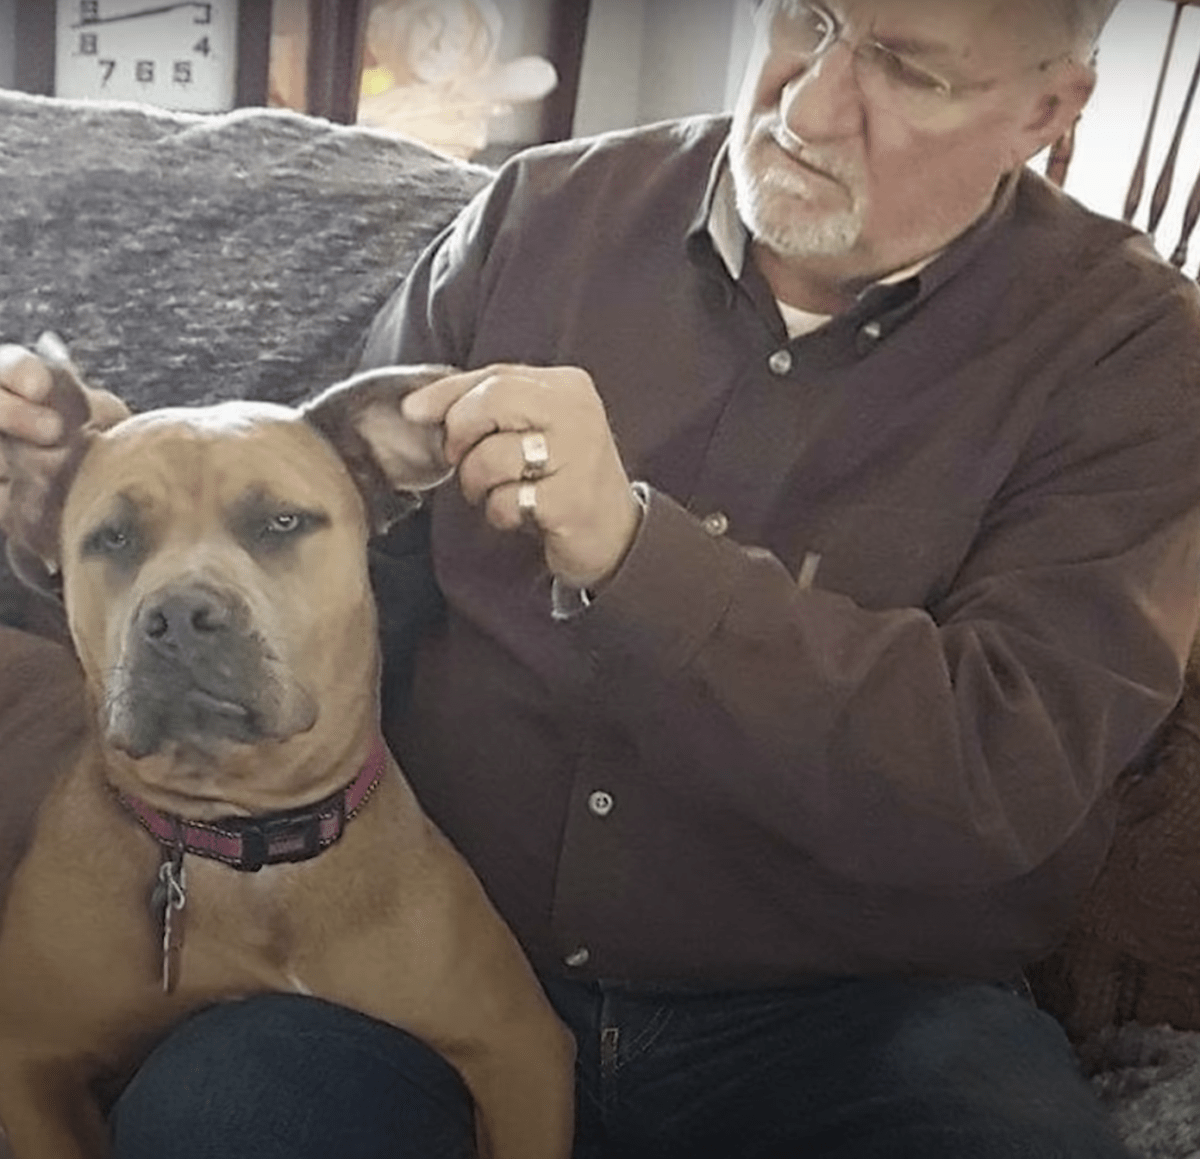 Tužan i uplašen pas podiže glavu kako bi žena znala da je živa i stavlja joj šapu u ruku